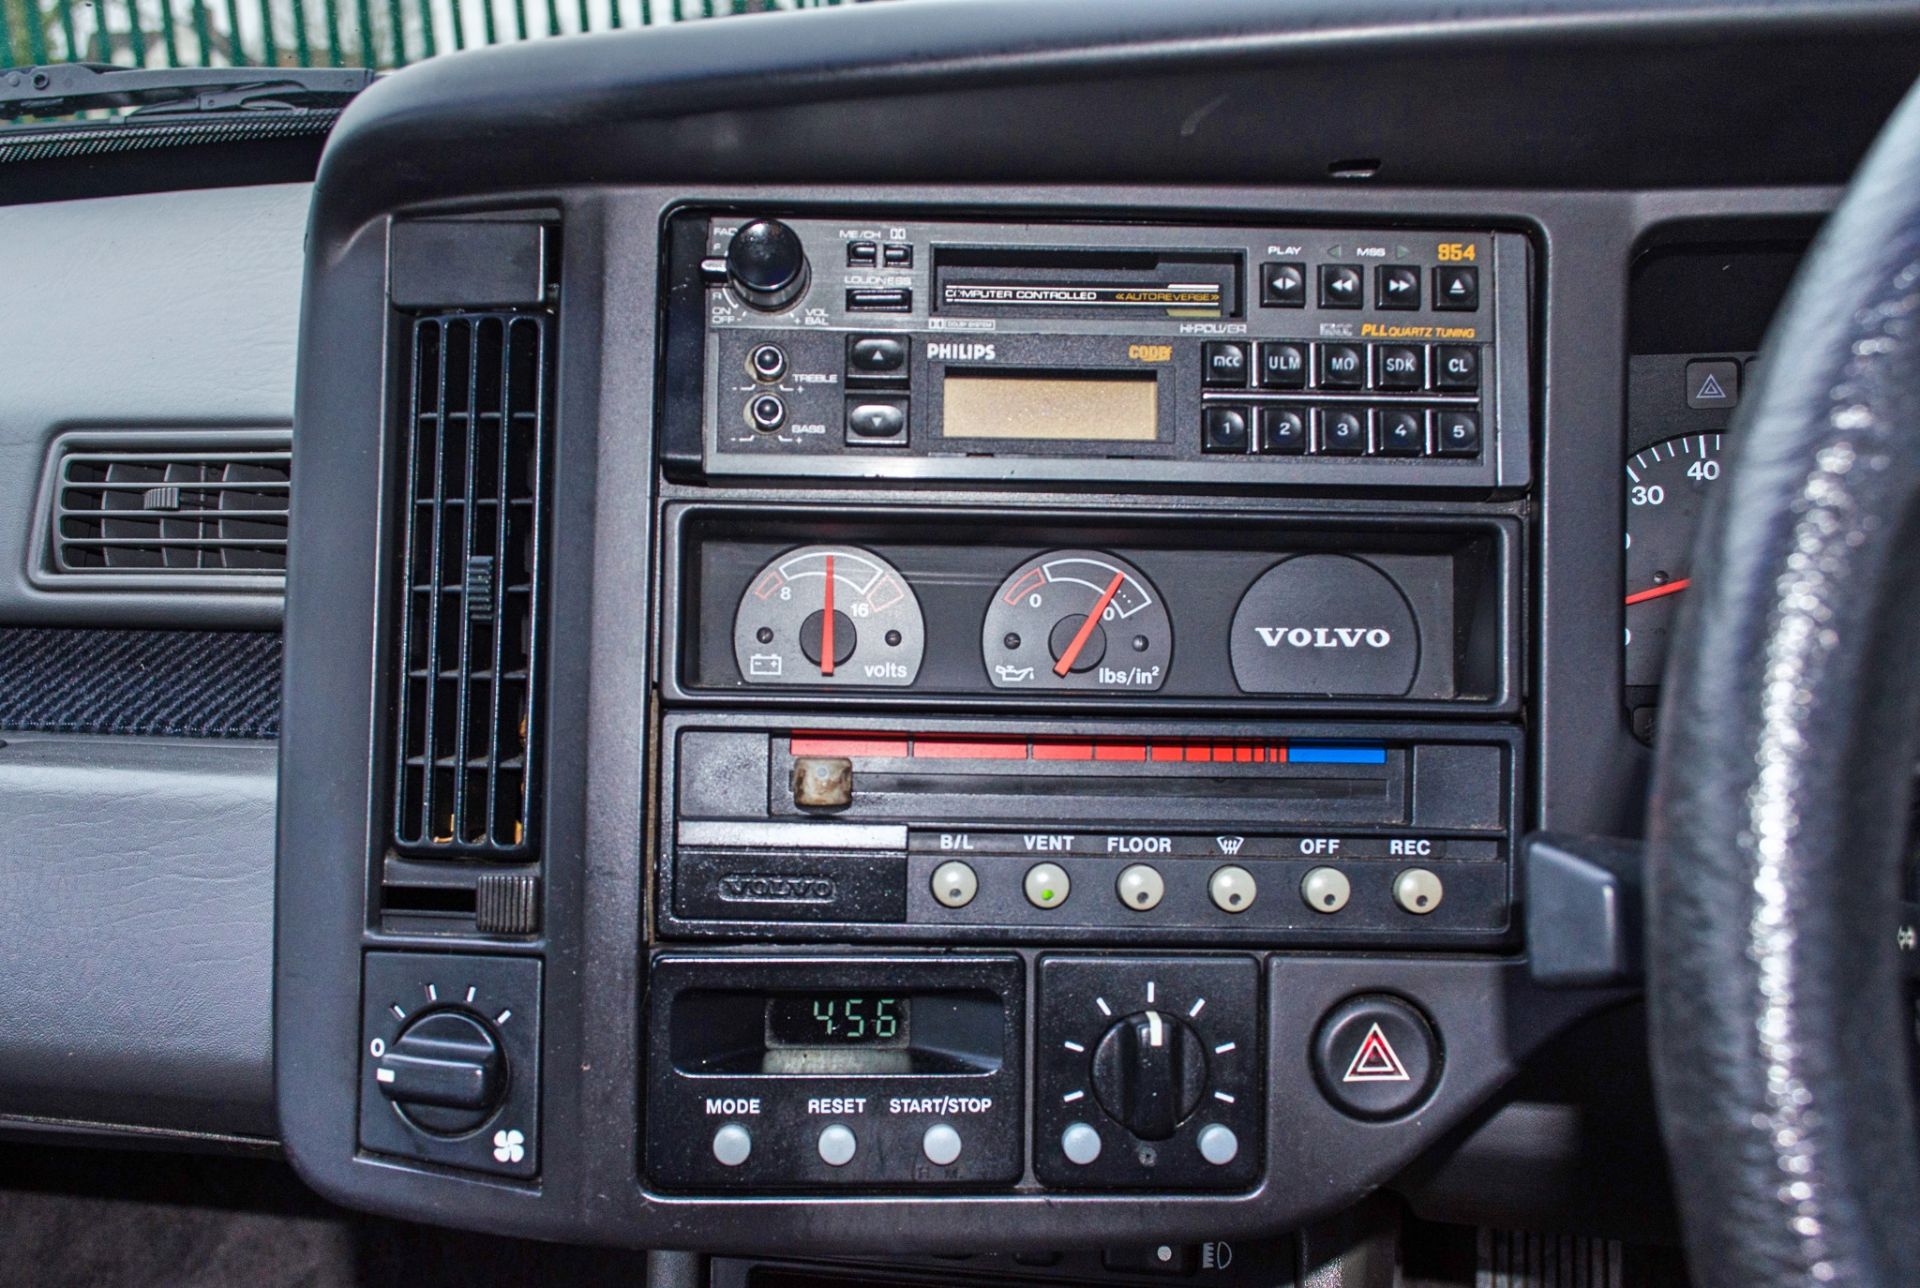 1987 Volvo 480 ES 1721CC 3 door hatchback - Image 43 of 56